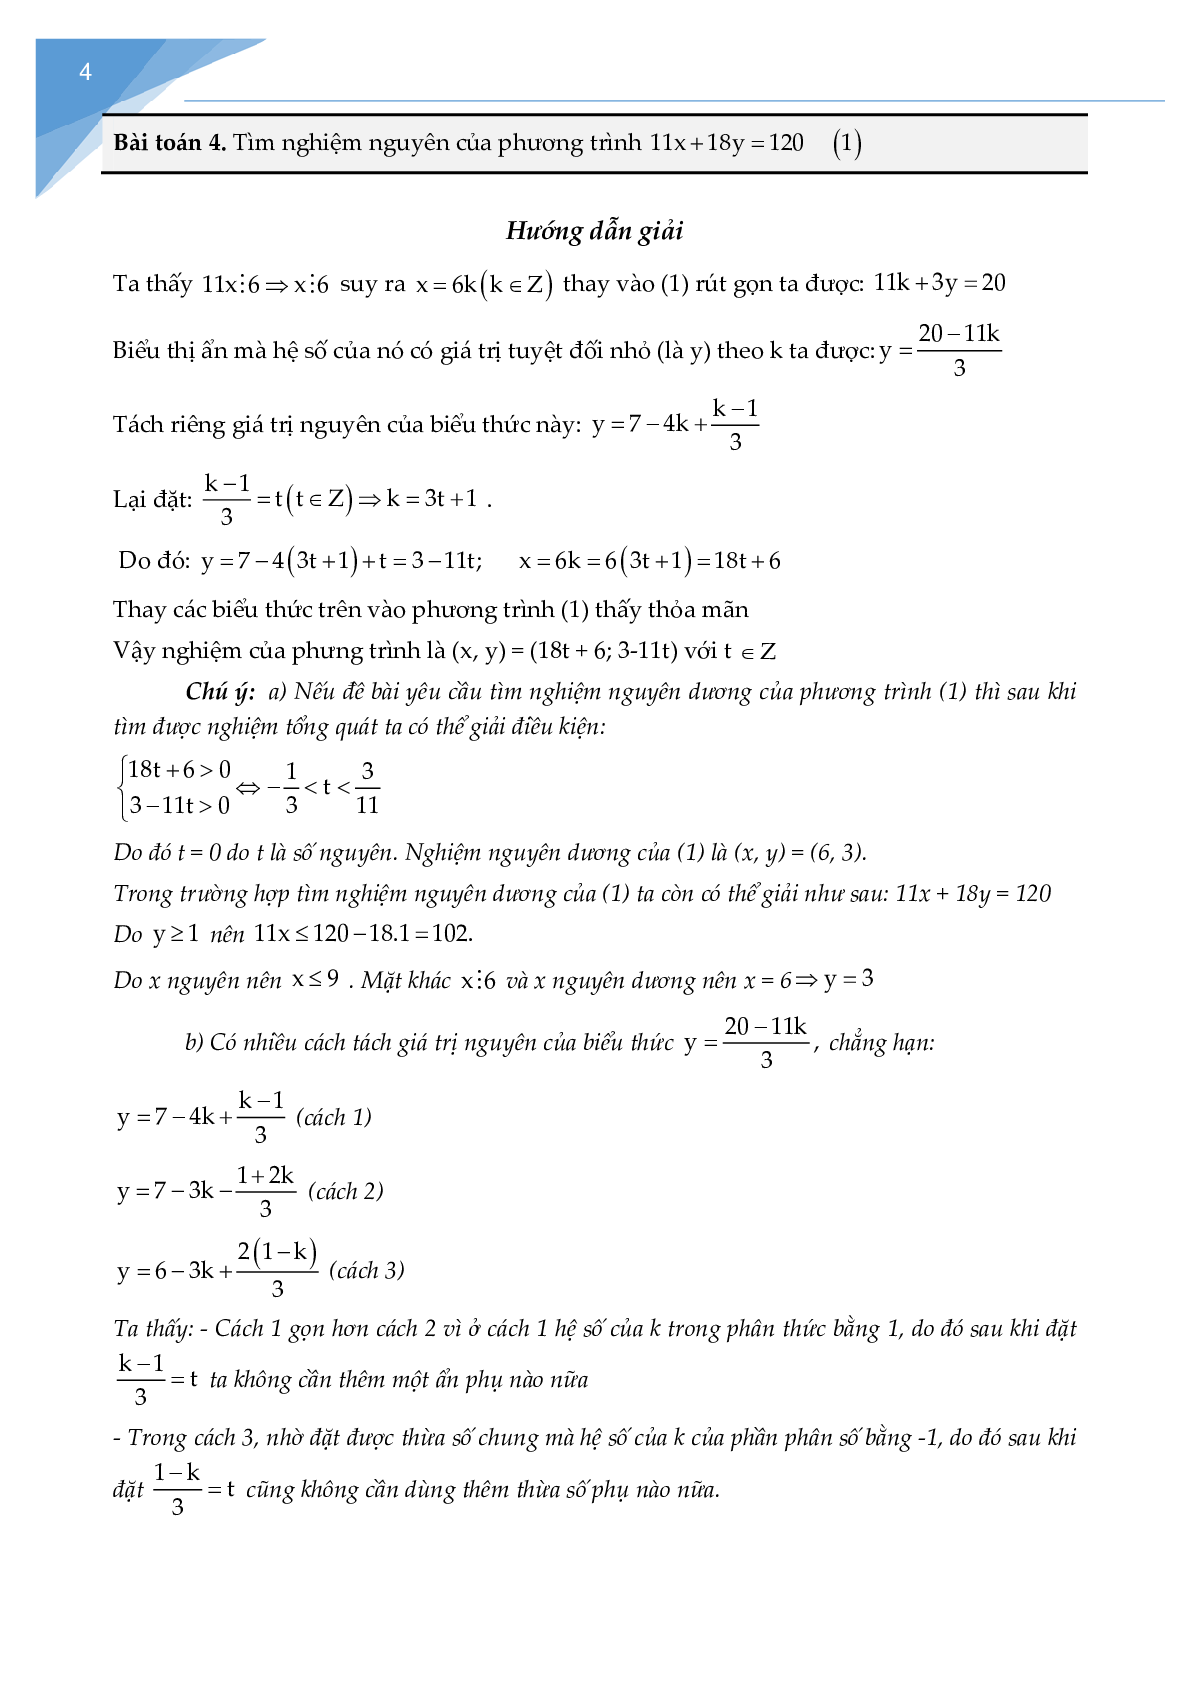 Chuyên đề phương trình nghiệm nguyên (trang 3)